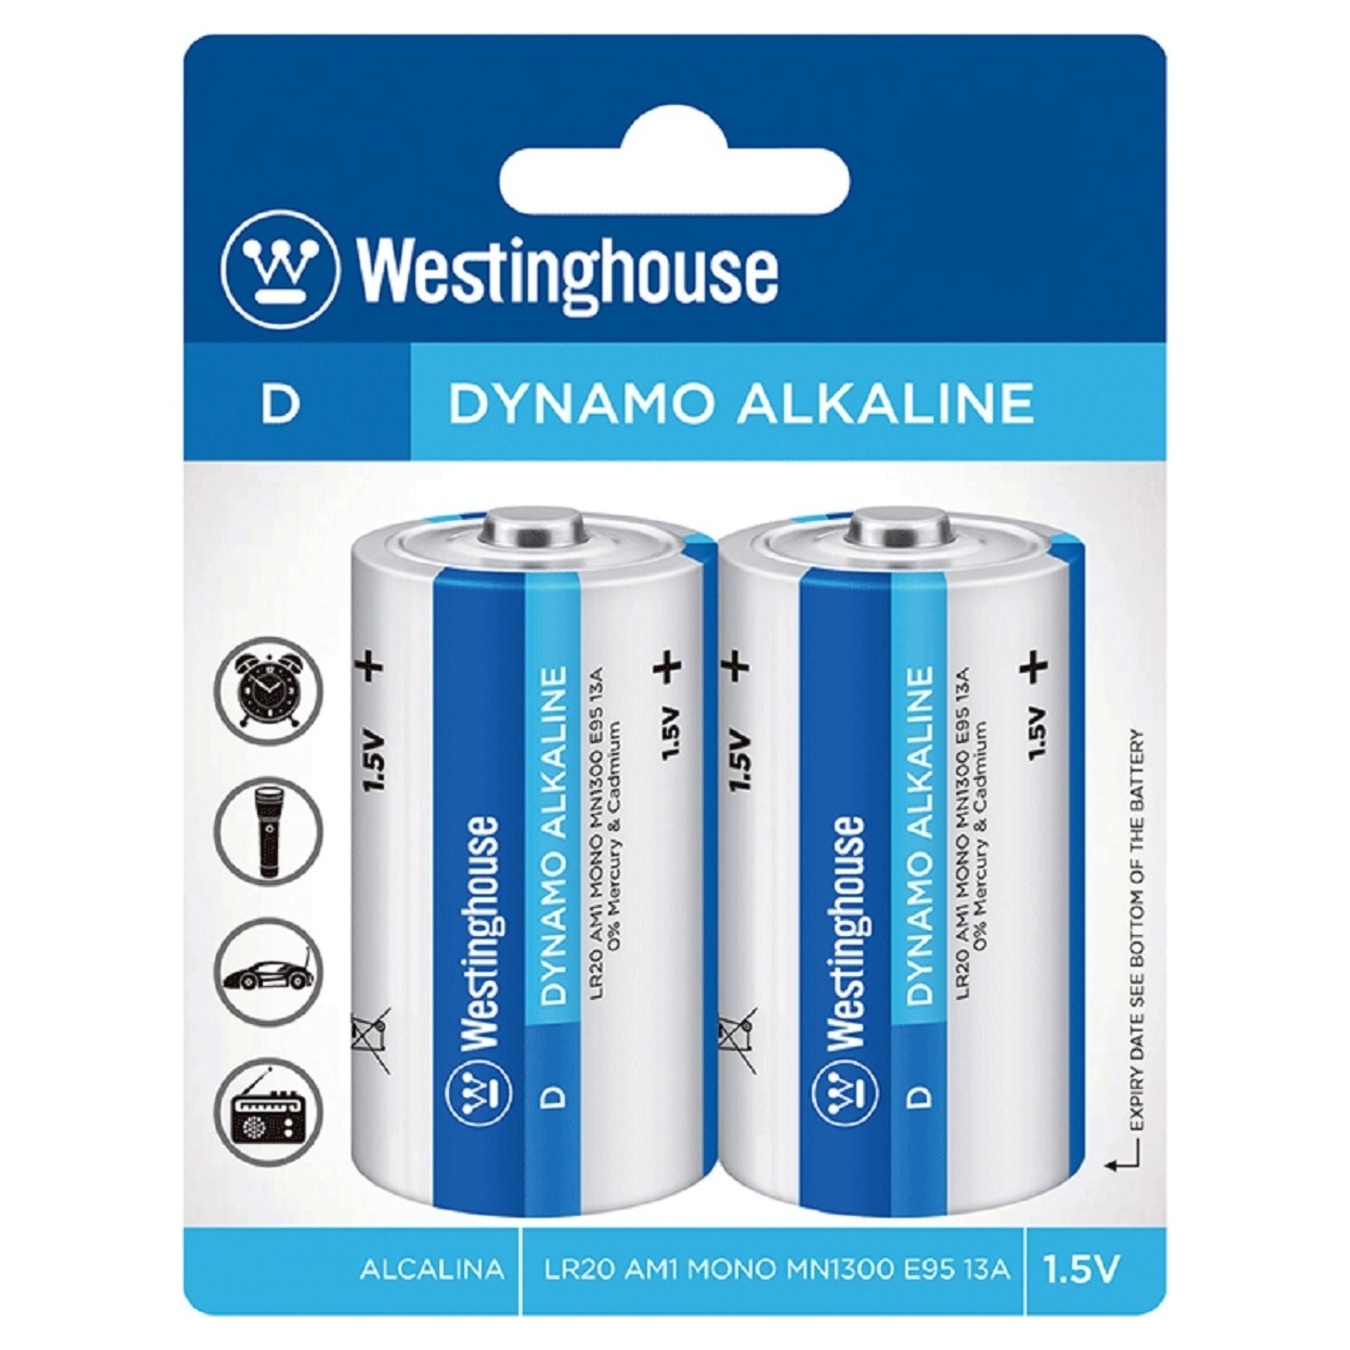 Battery Westinghouse Alkaline Dynamo D/LR20 alkaline 2pcs